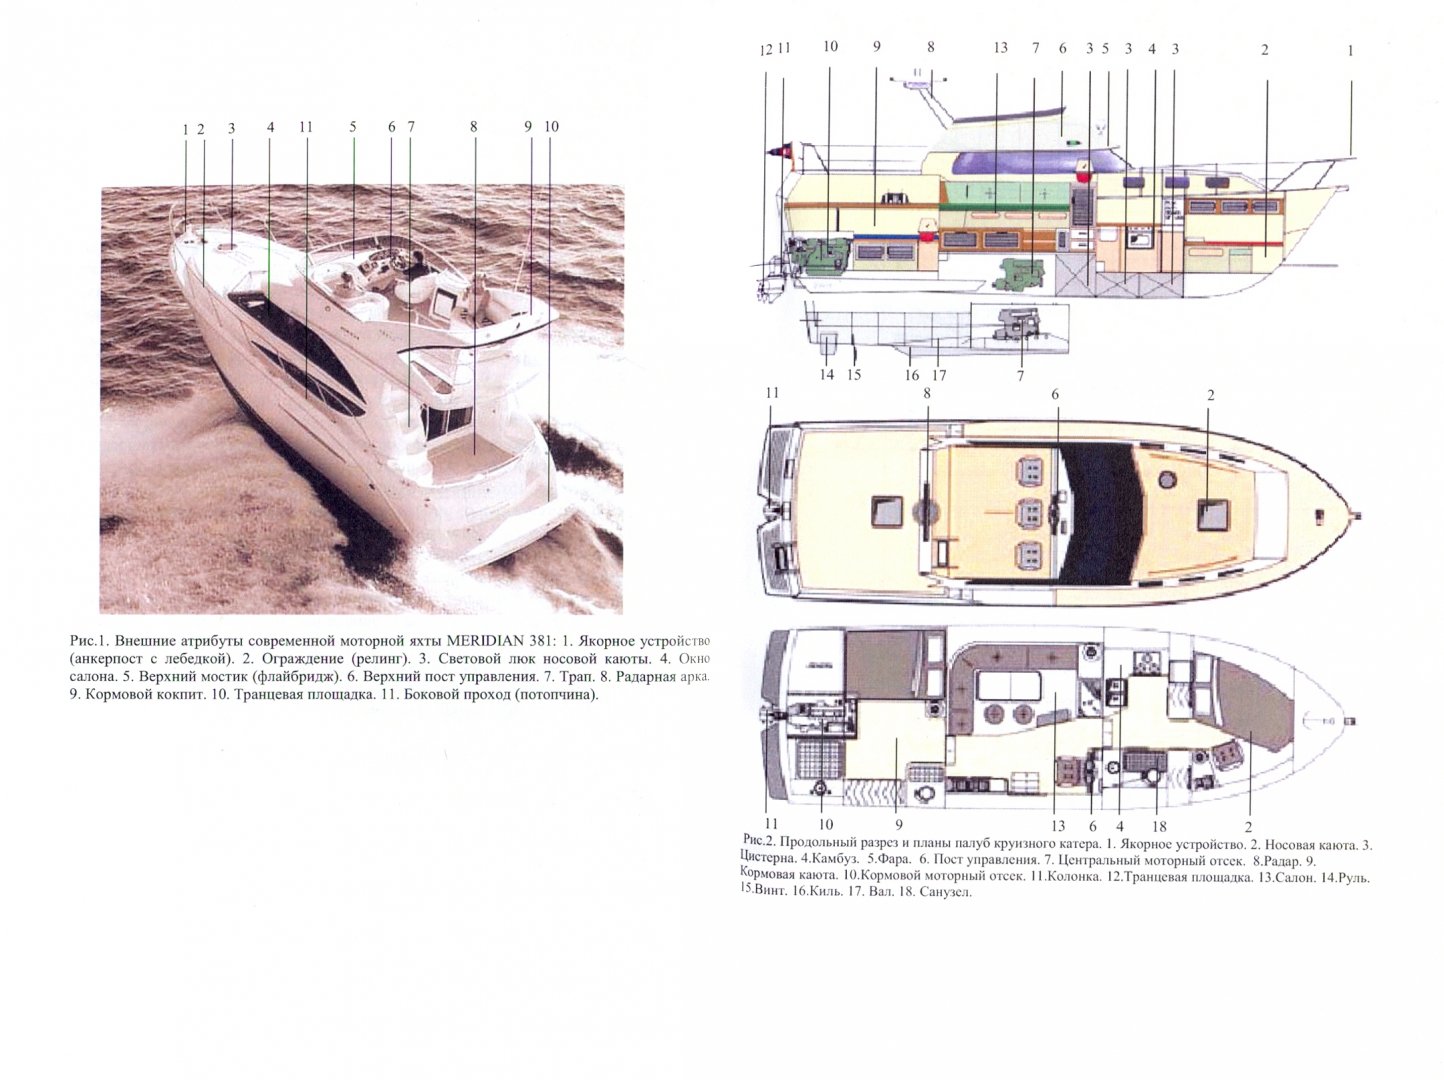 Иллюстрация 1 из 2 для Малые моторные яхты для больших плаваний - Рубинов, Ткачев | Лабиринт - книги. Источник: Лабиринт